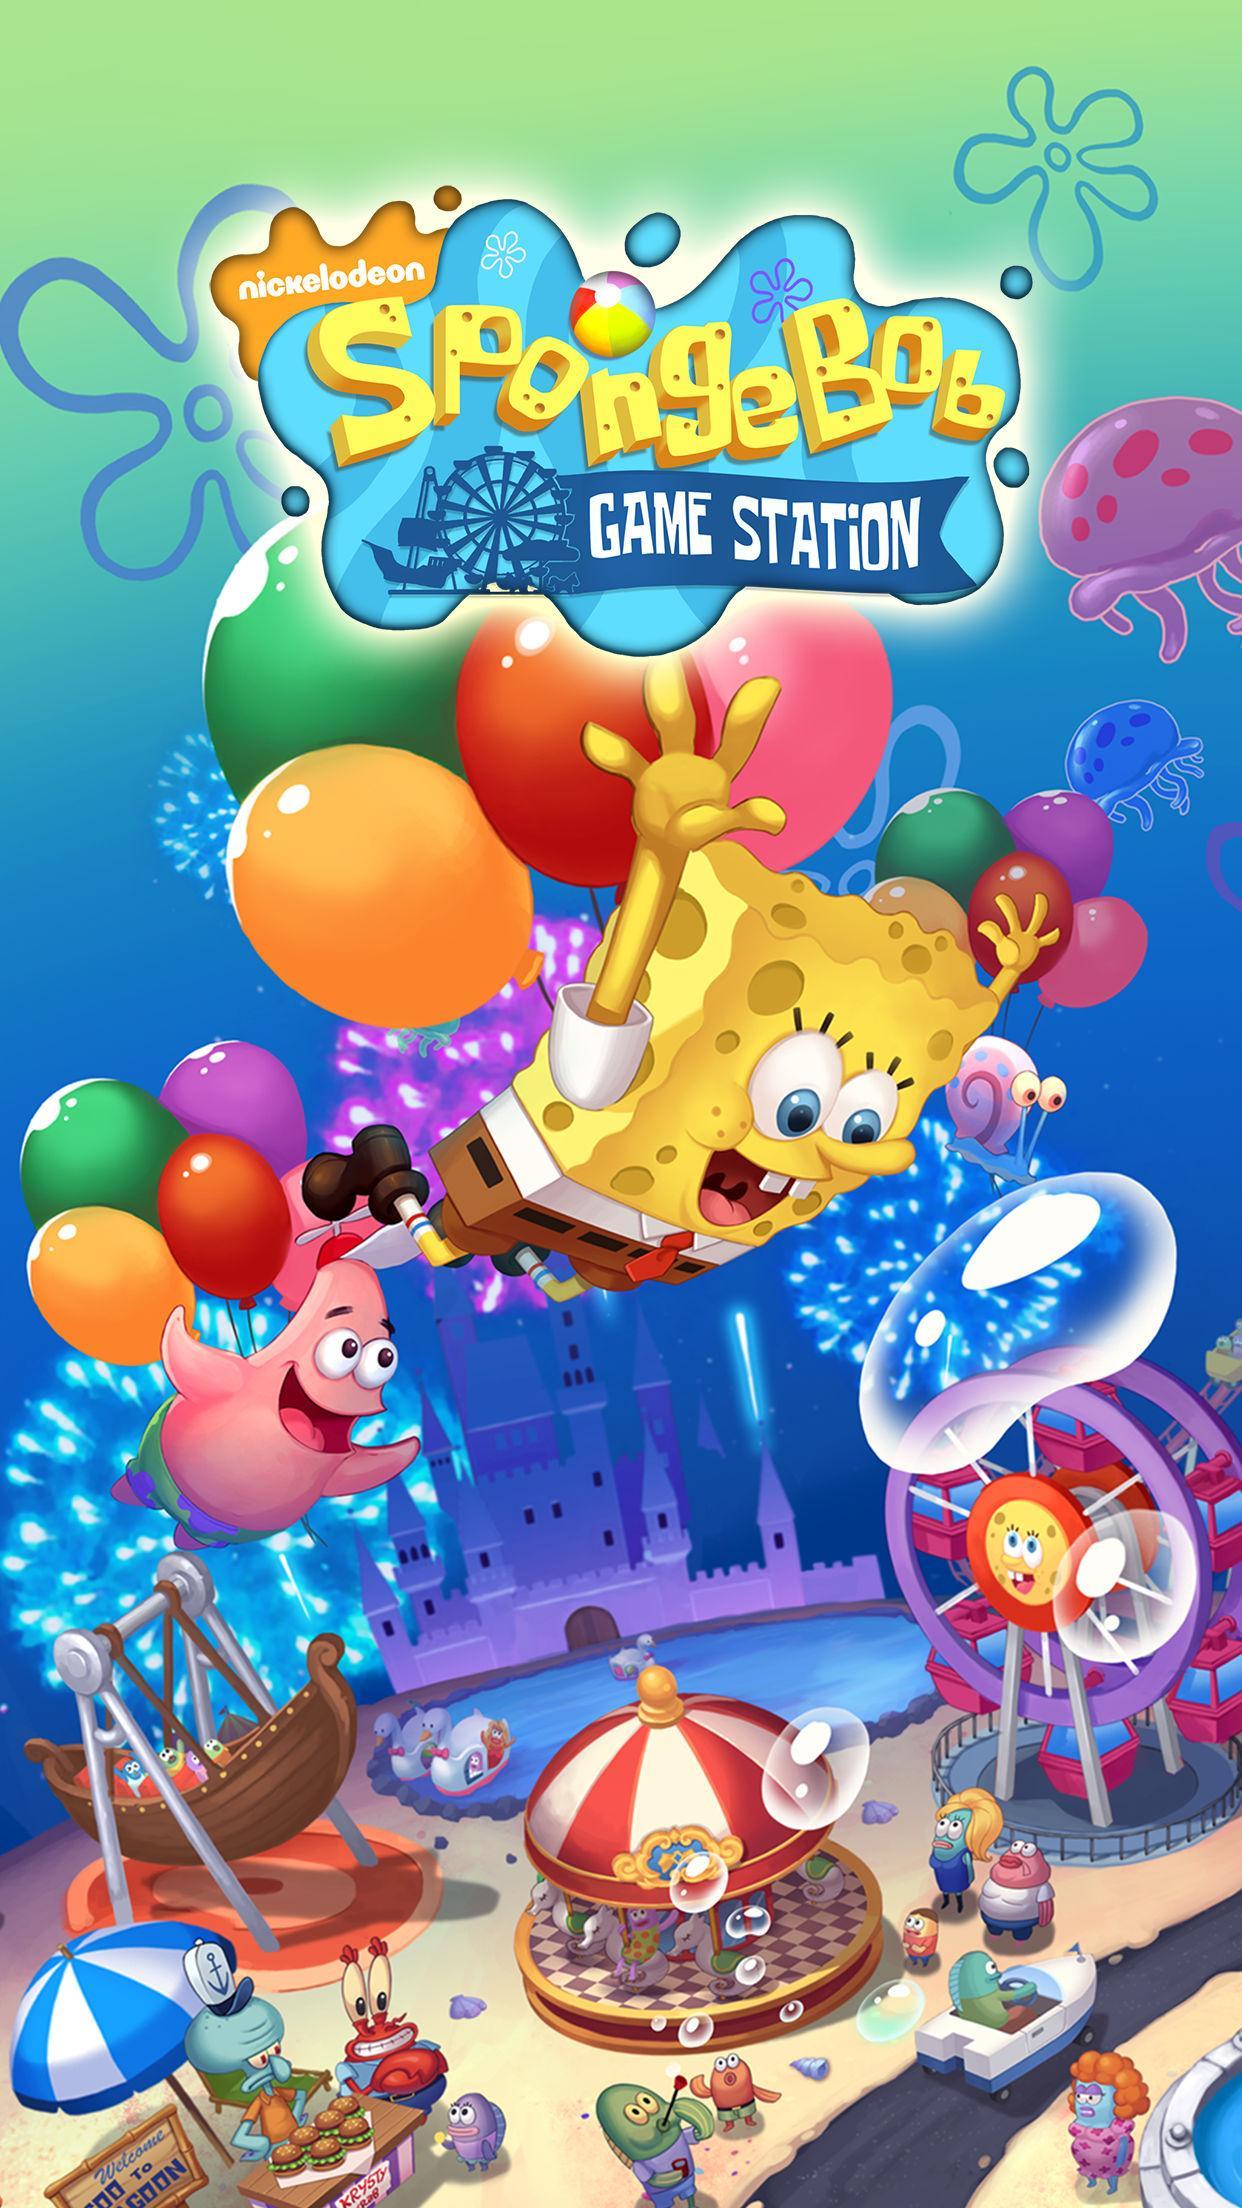 Screenshot 1 of Губка Боб игровая станция 